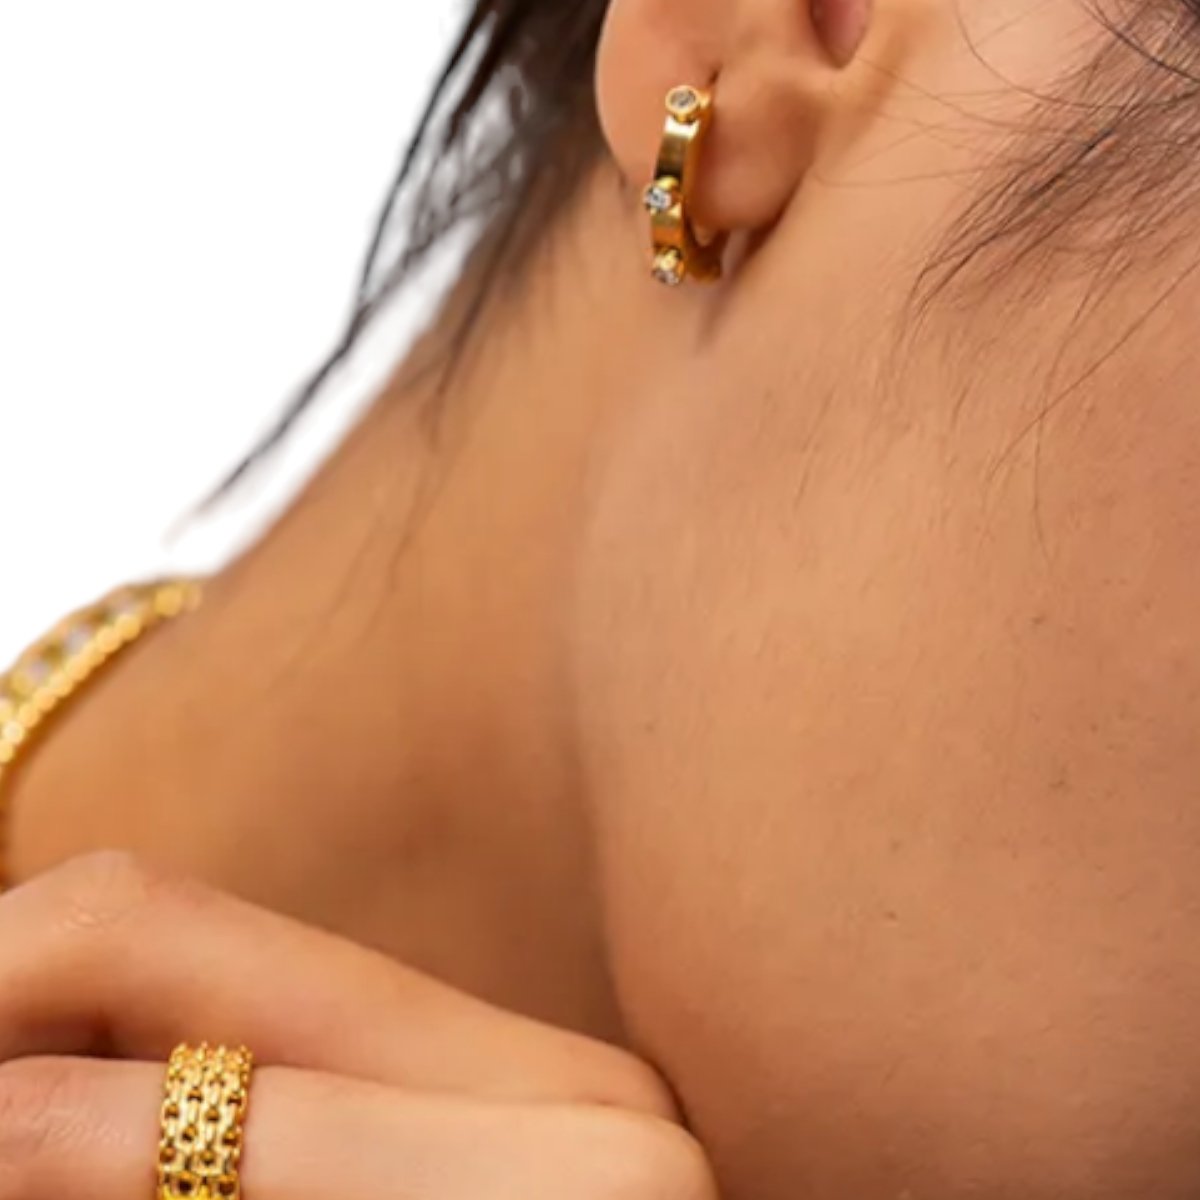 Women's J-Hoops Earrings With Zircons - Jewelry - EM Accessories - new - Stainless Steel - SSTEEL-0027-CLE-EAR